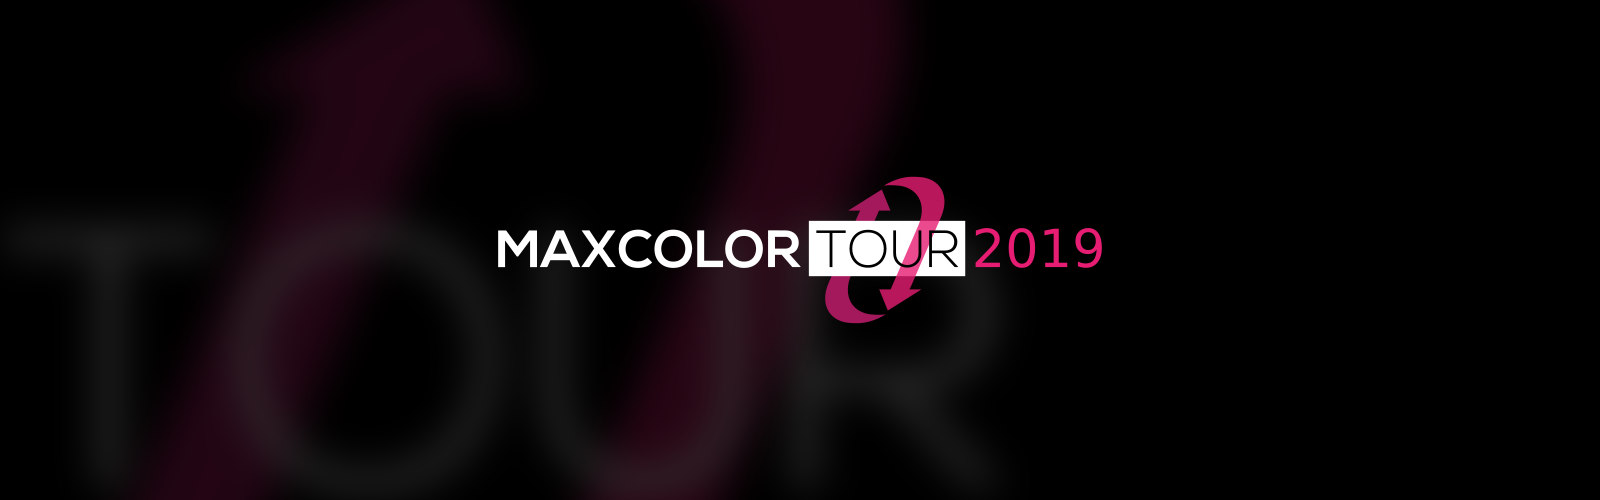 Maxcolor Tour 2019